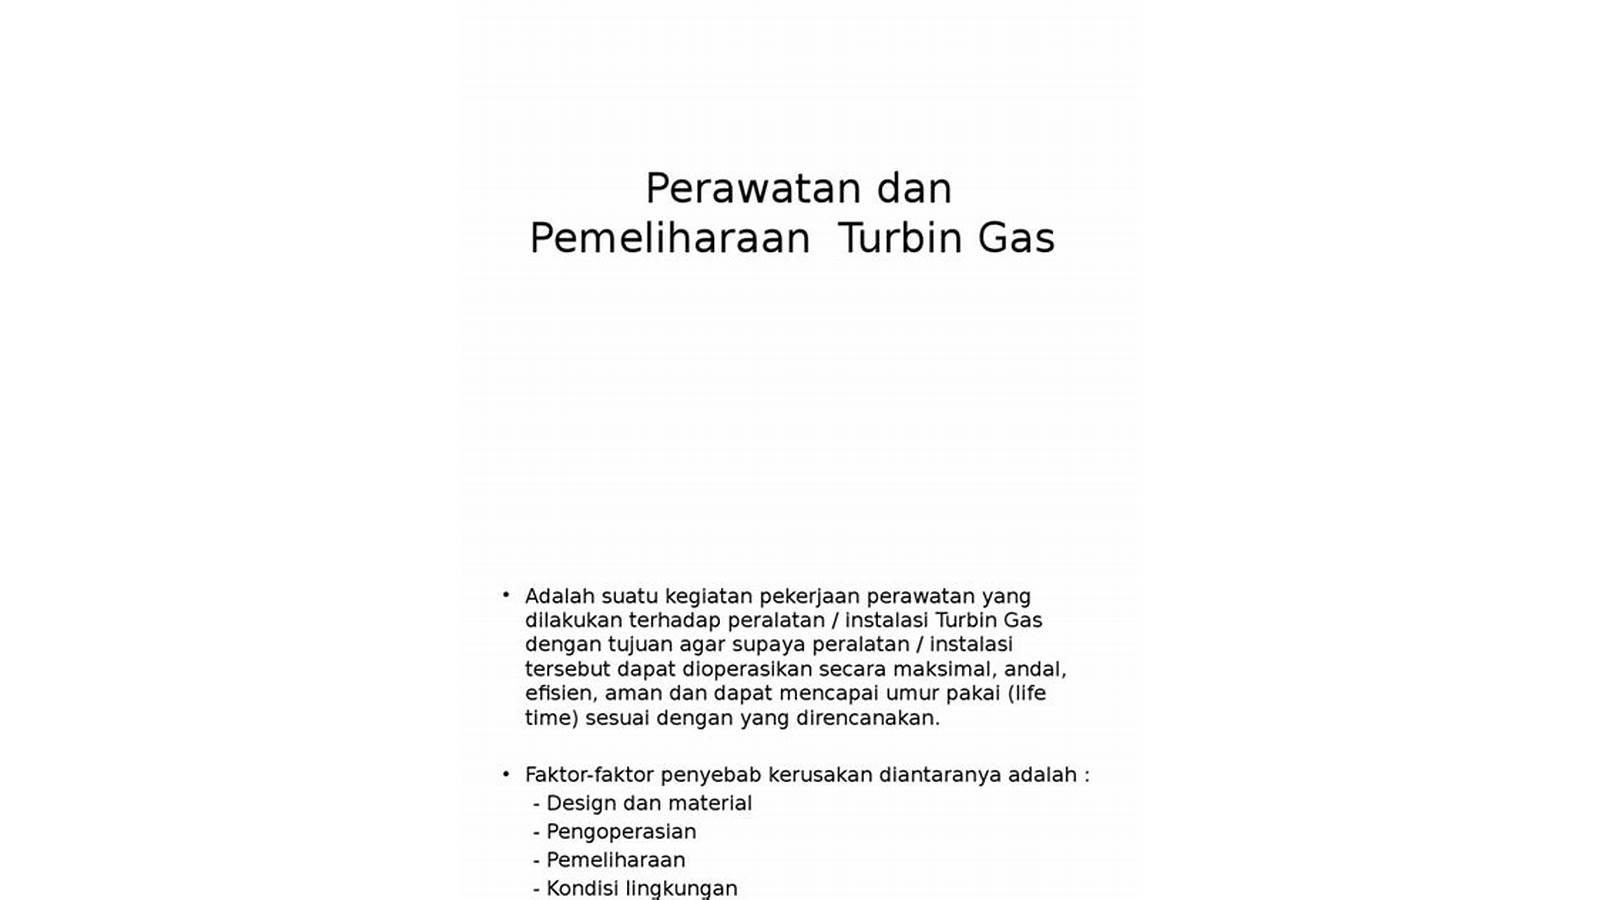 Pemeliharaan dan Perawatan Turbin Gas in Indonesia